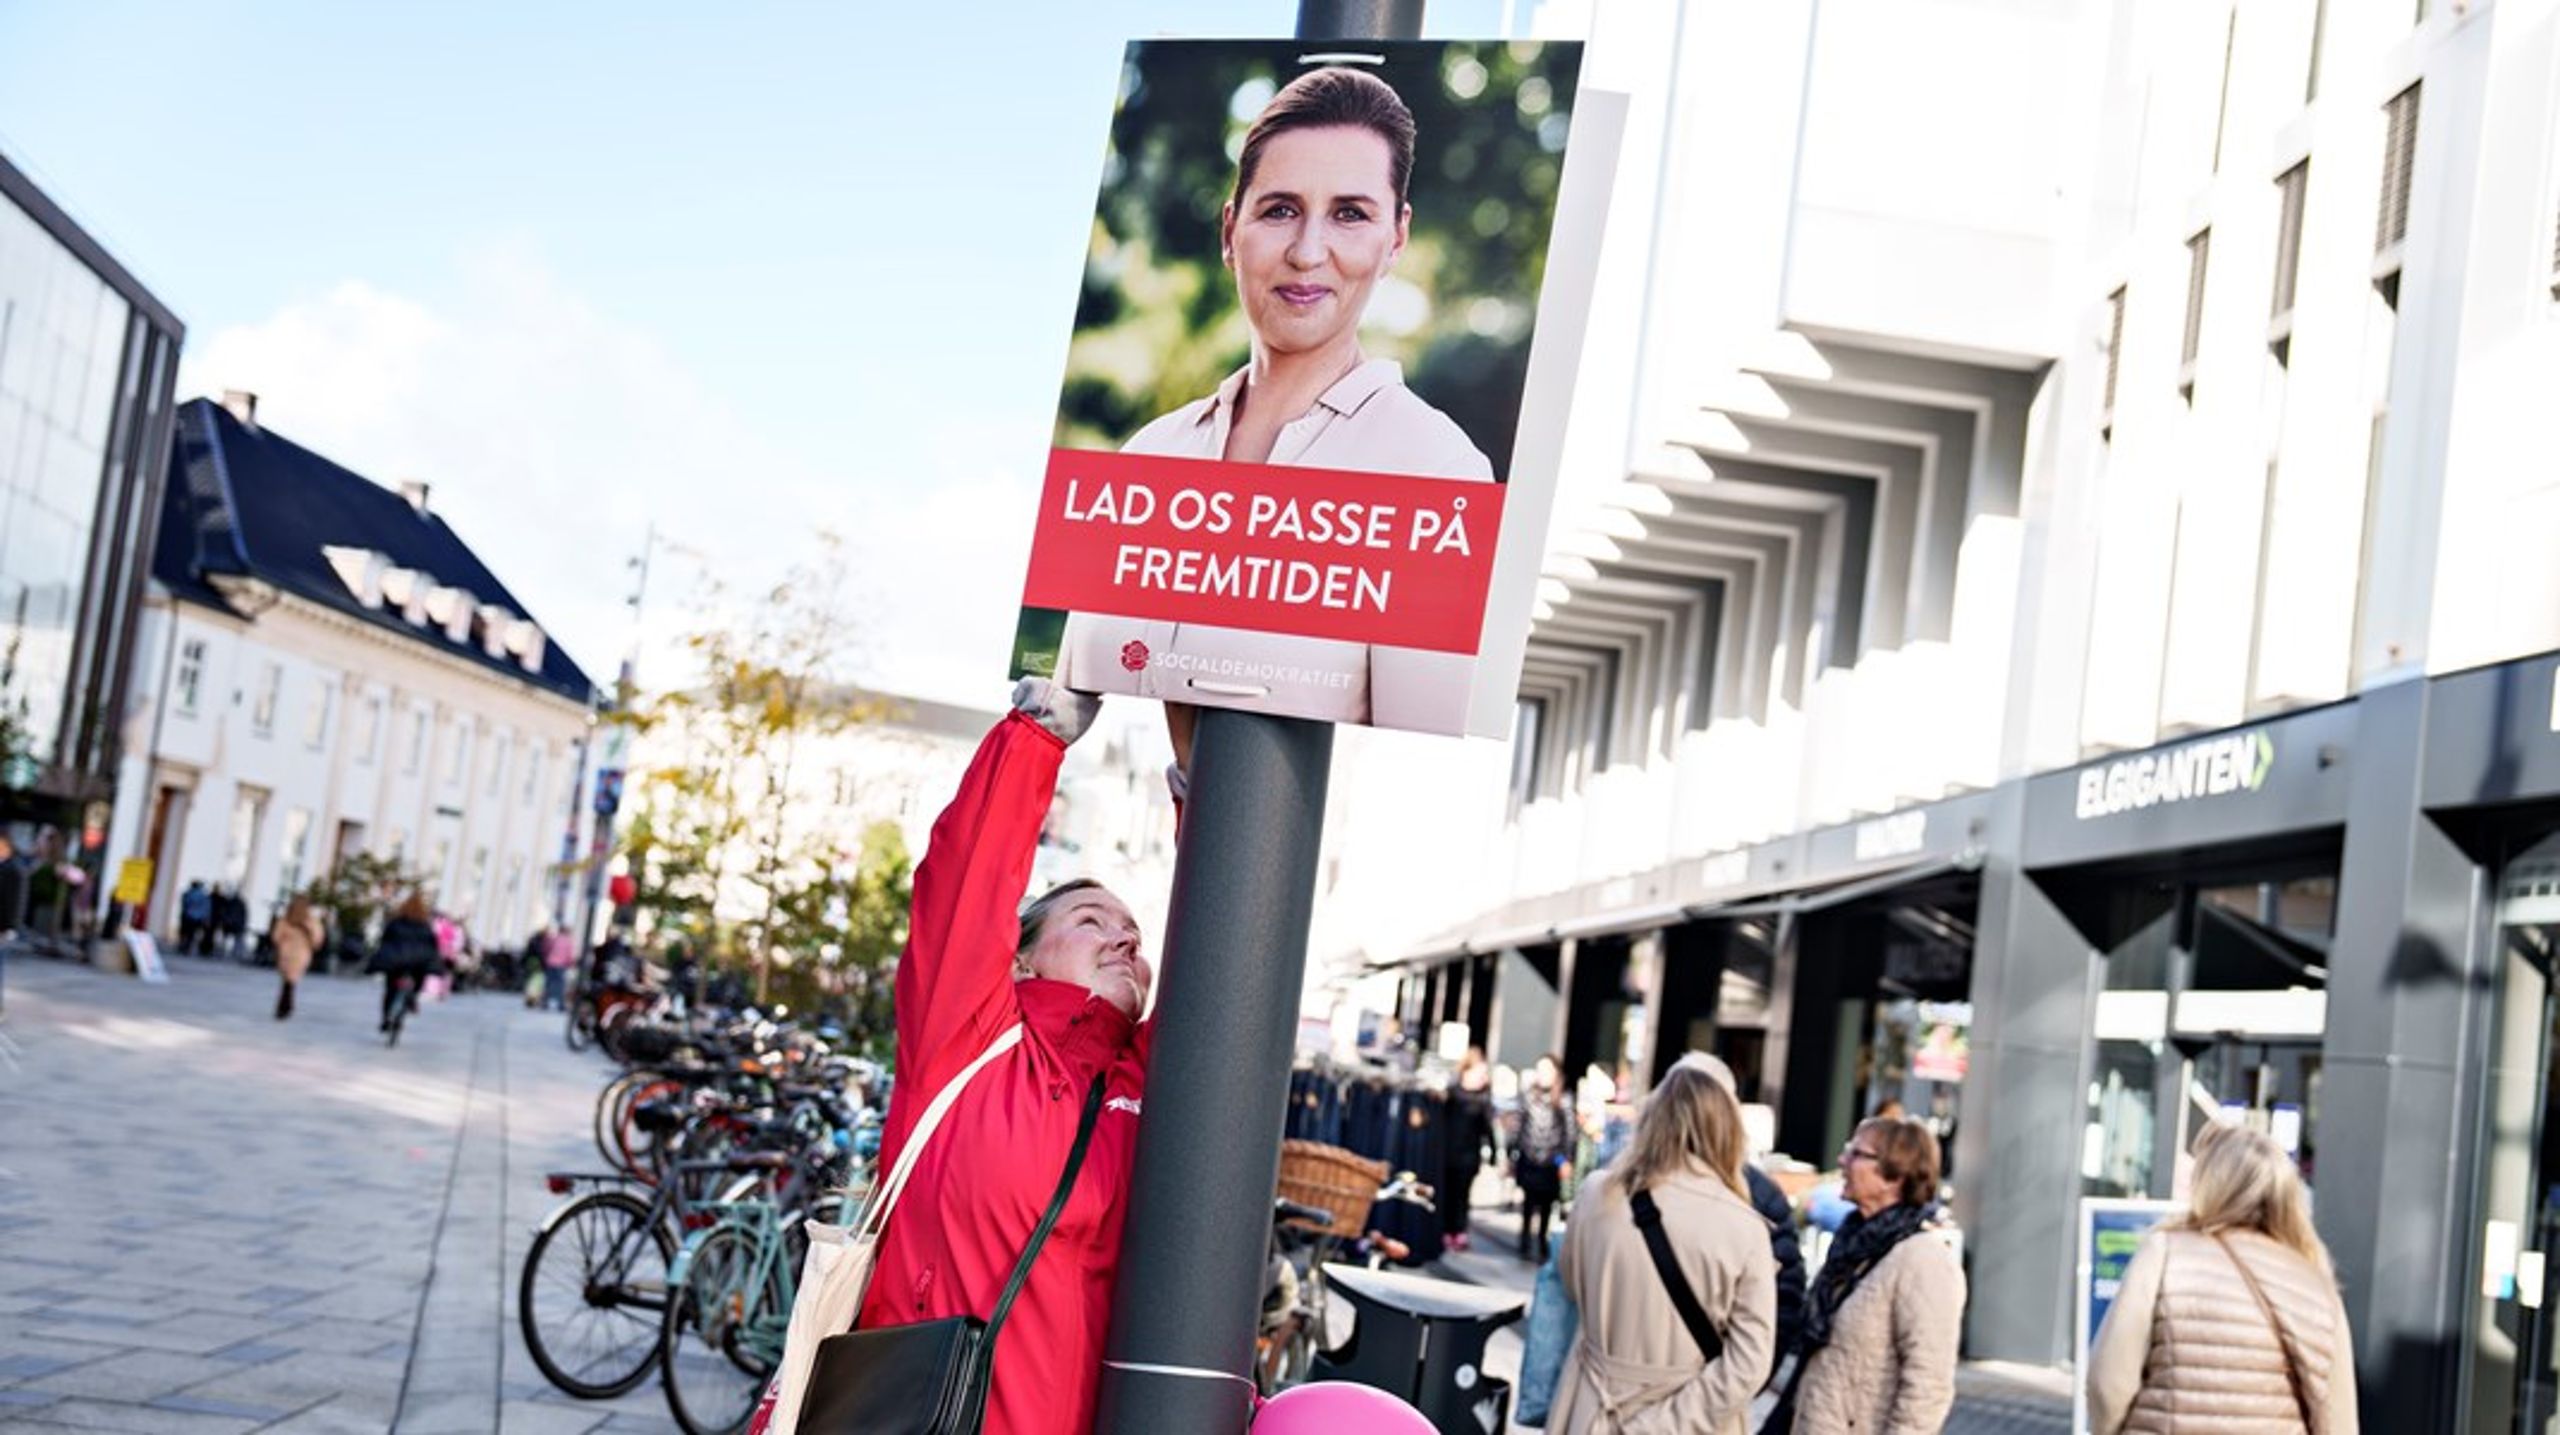 Tisdagen&nbsp;den 1 november går danskarna till val. Efter att varit utanför agendan under lång tid spås bostadspolitiken nu bli en het valfråga.&nbsp;